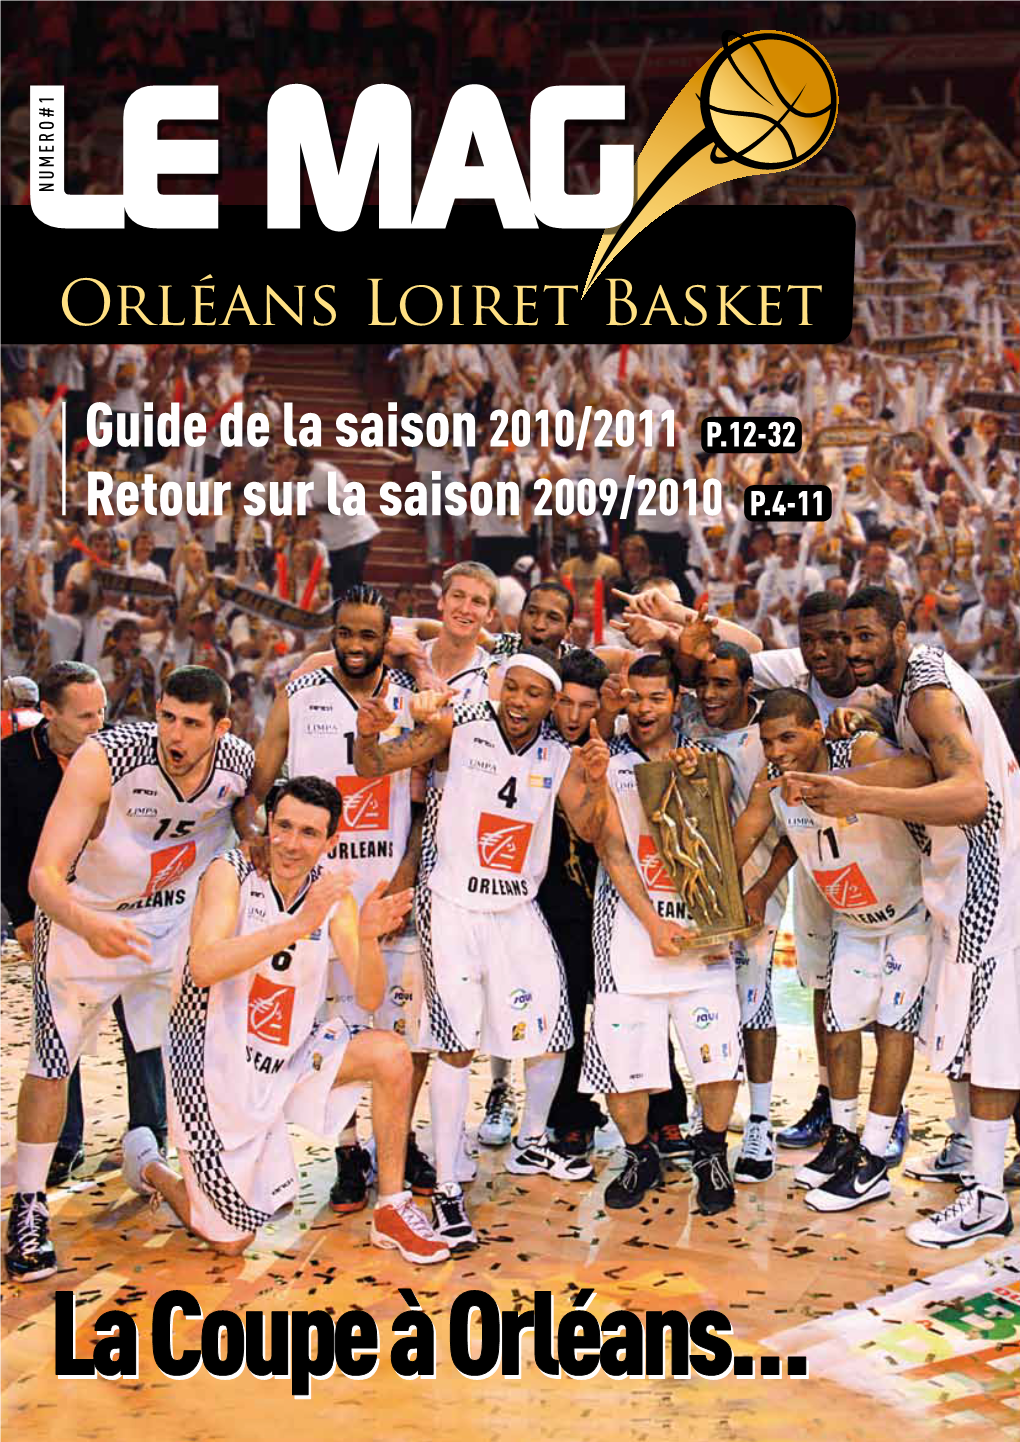 Retour Sur La Saison 2009/2010 P.4-11 Guide De La Saison 2010